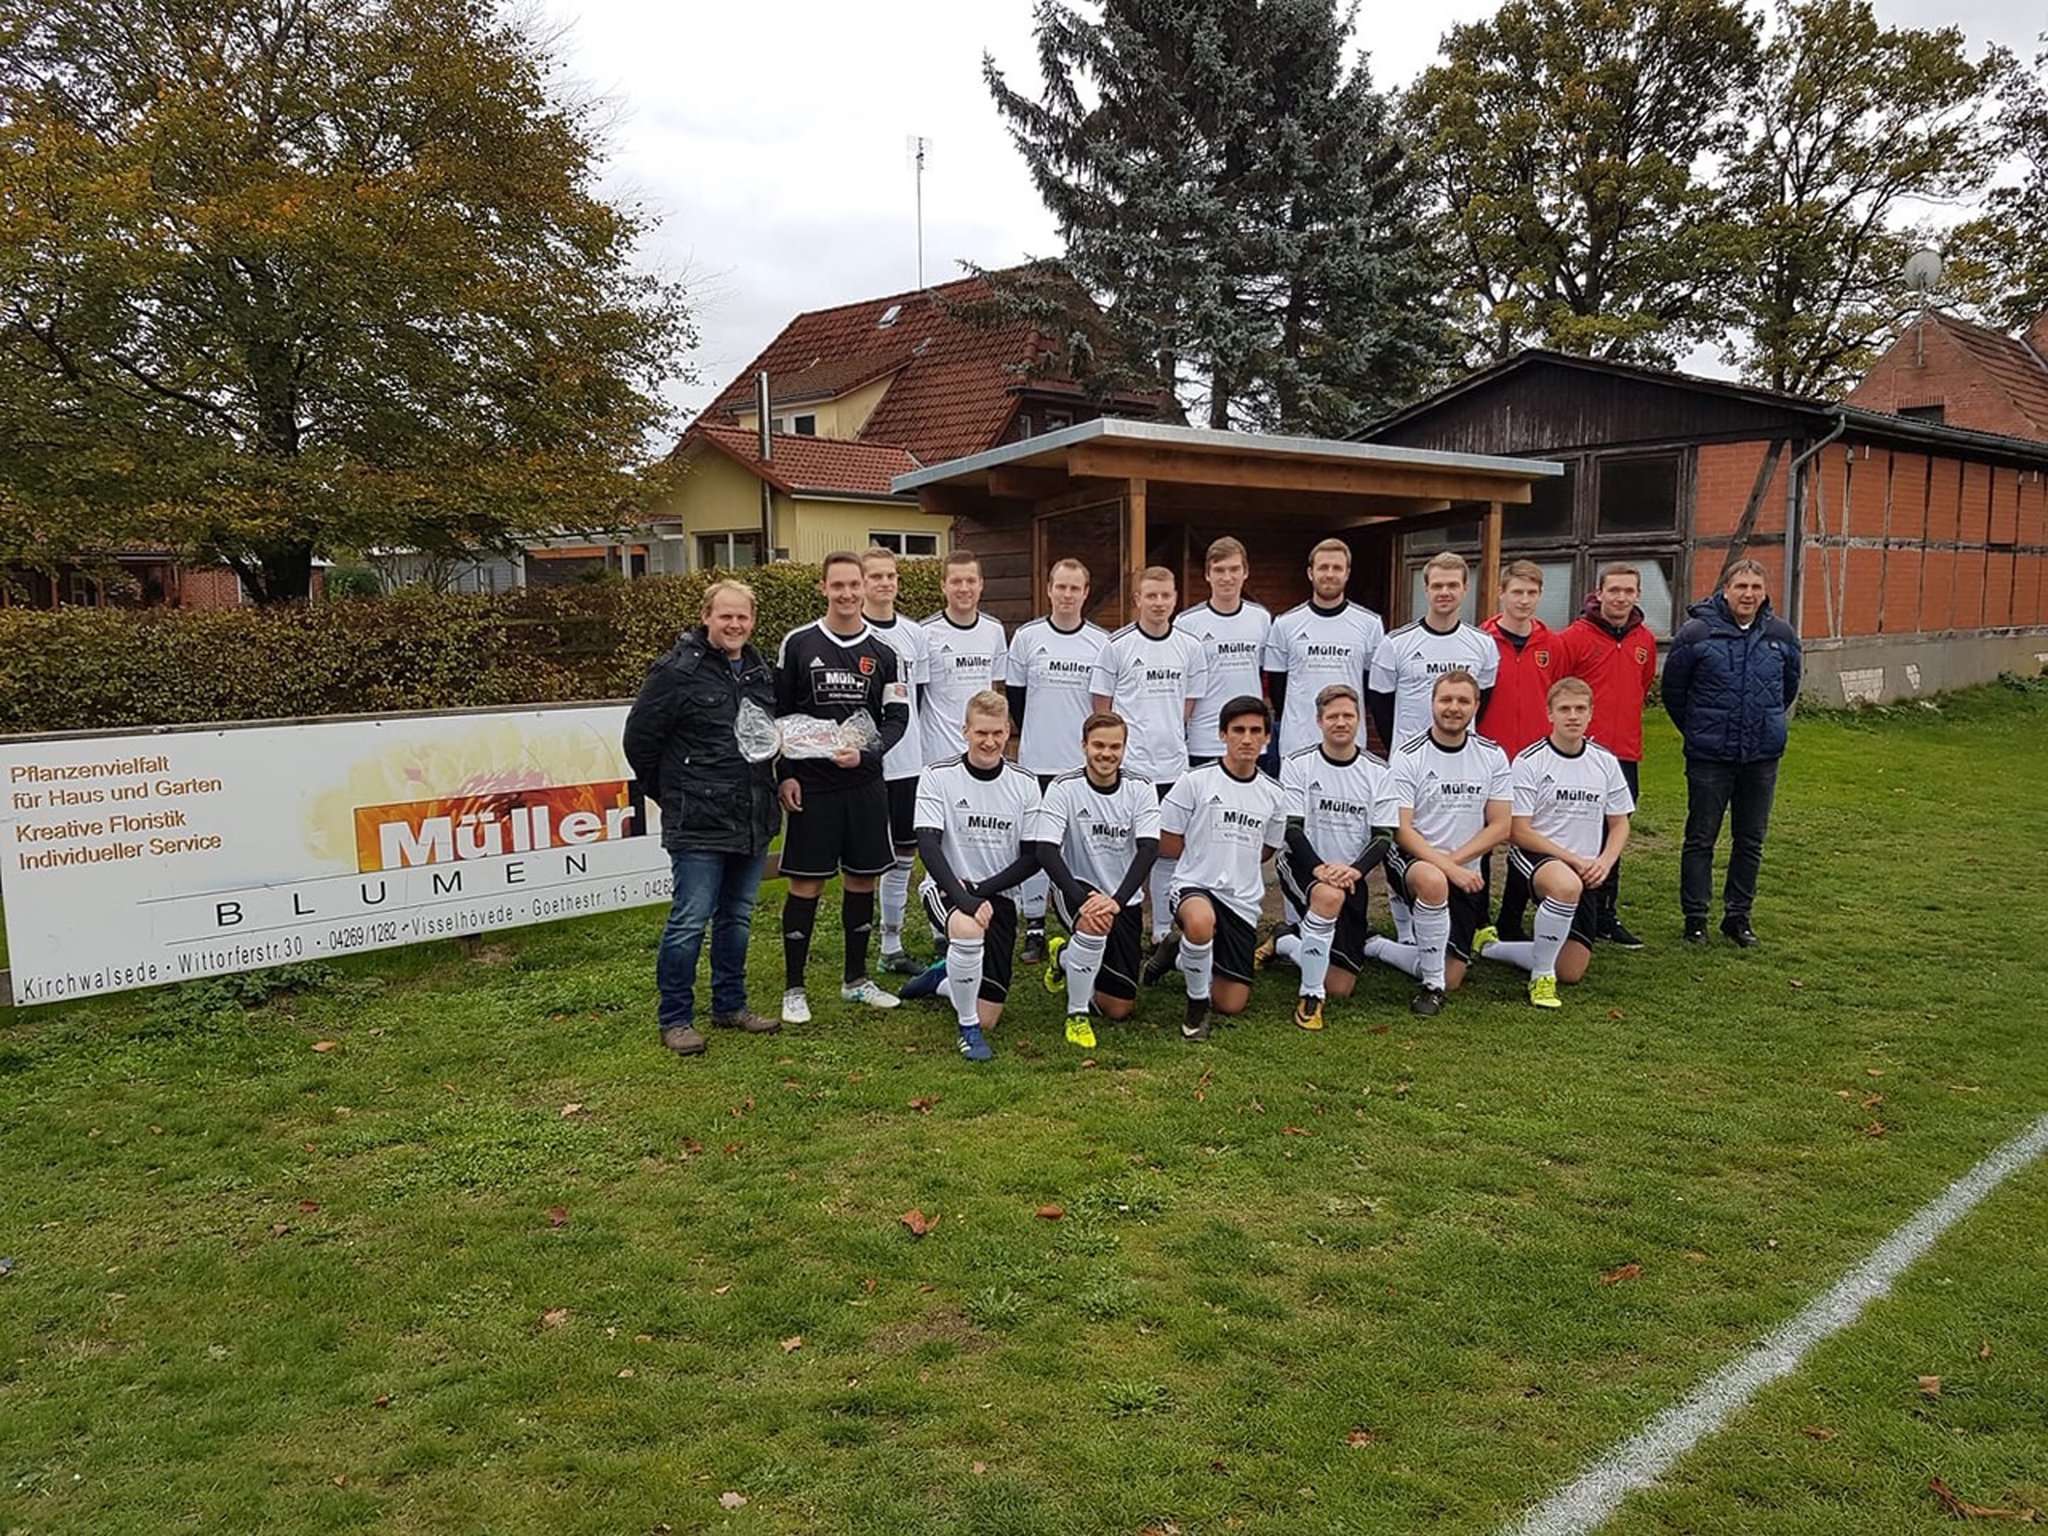 Die Herren-Mannschaft des FC Walsede freut sich doppelt: Nicht nur, dass das Team im Finale steht, sondern es genießt zudem Heimvorteil.